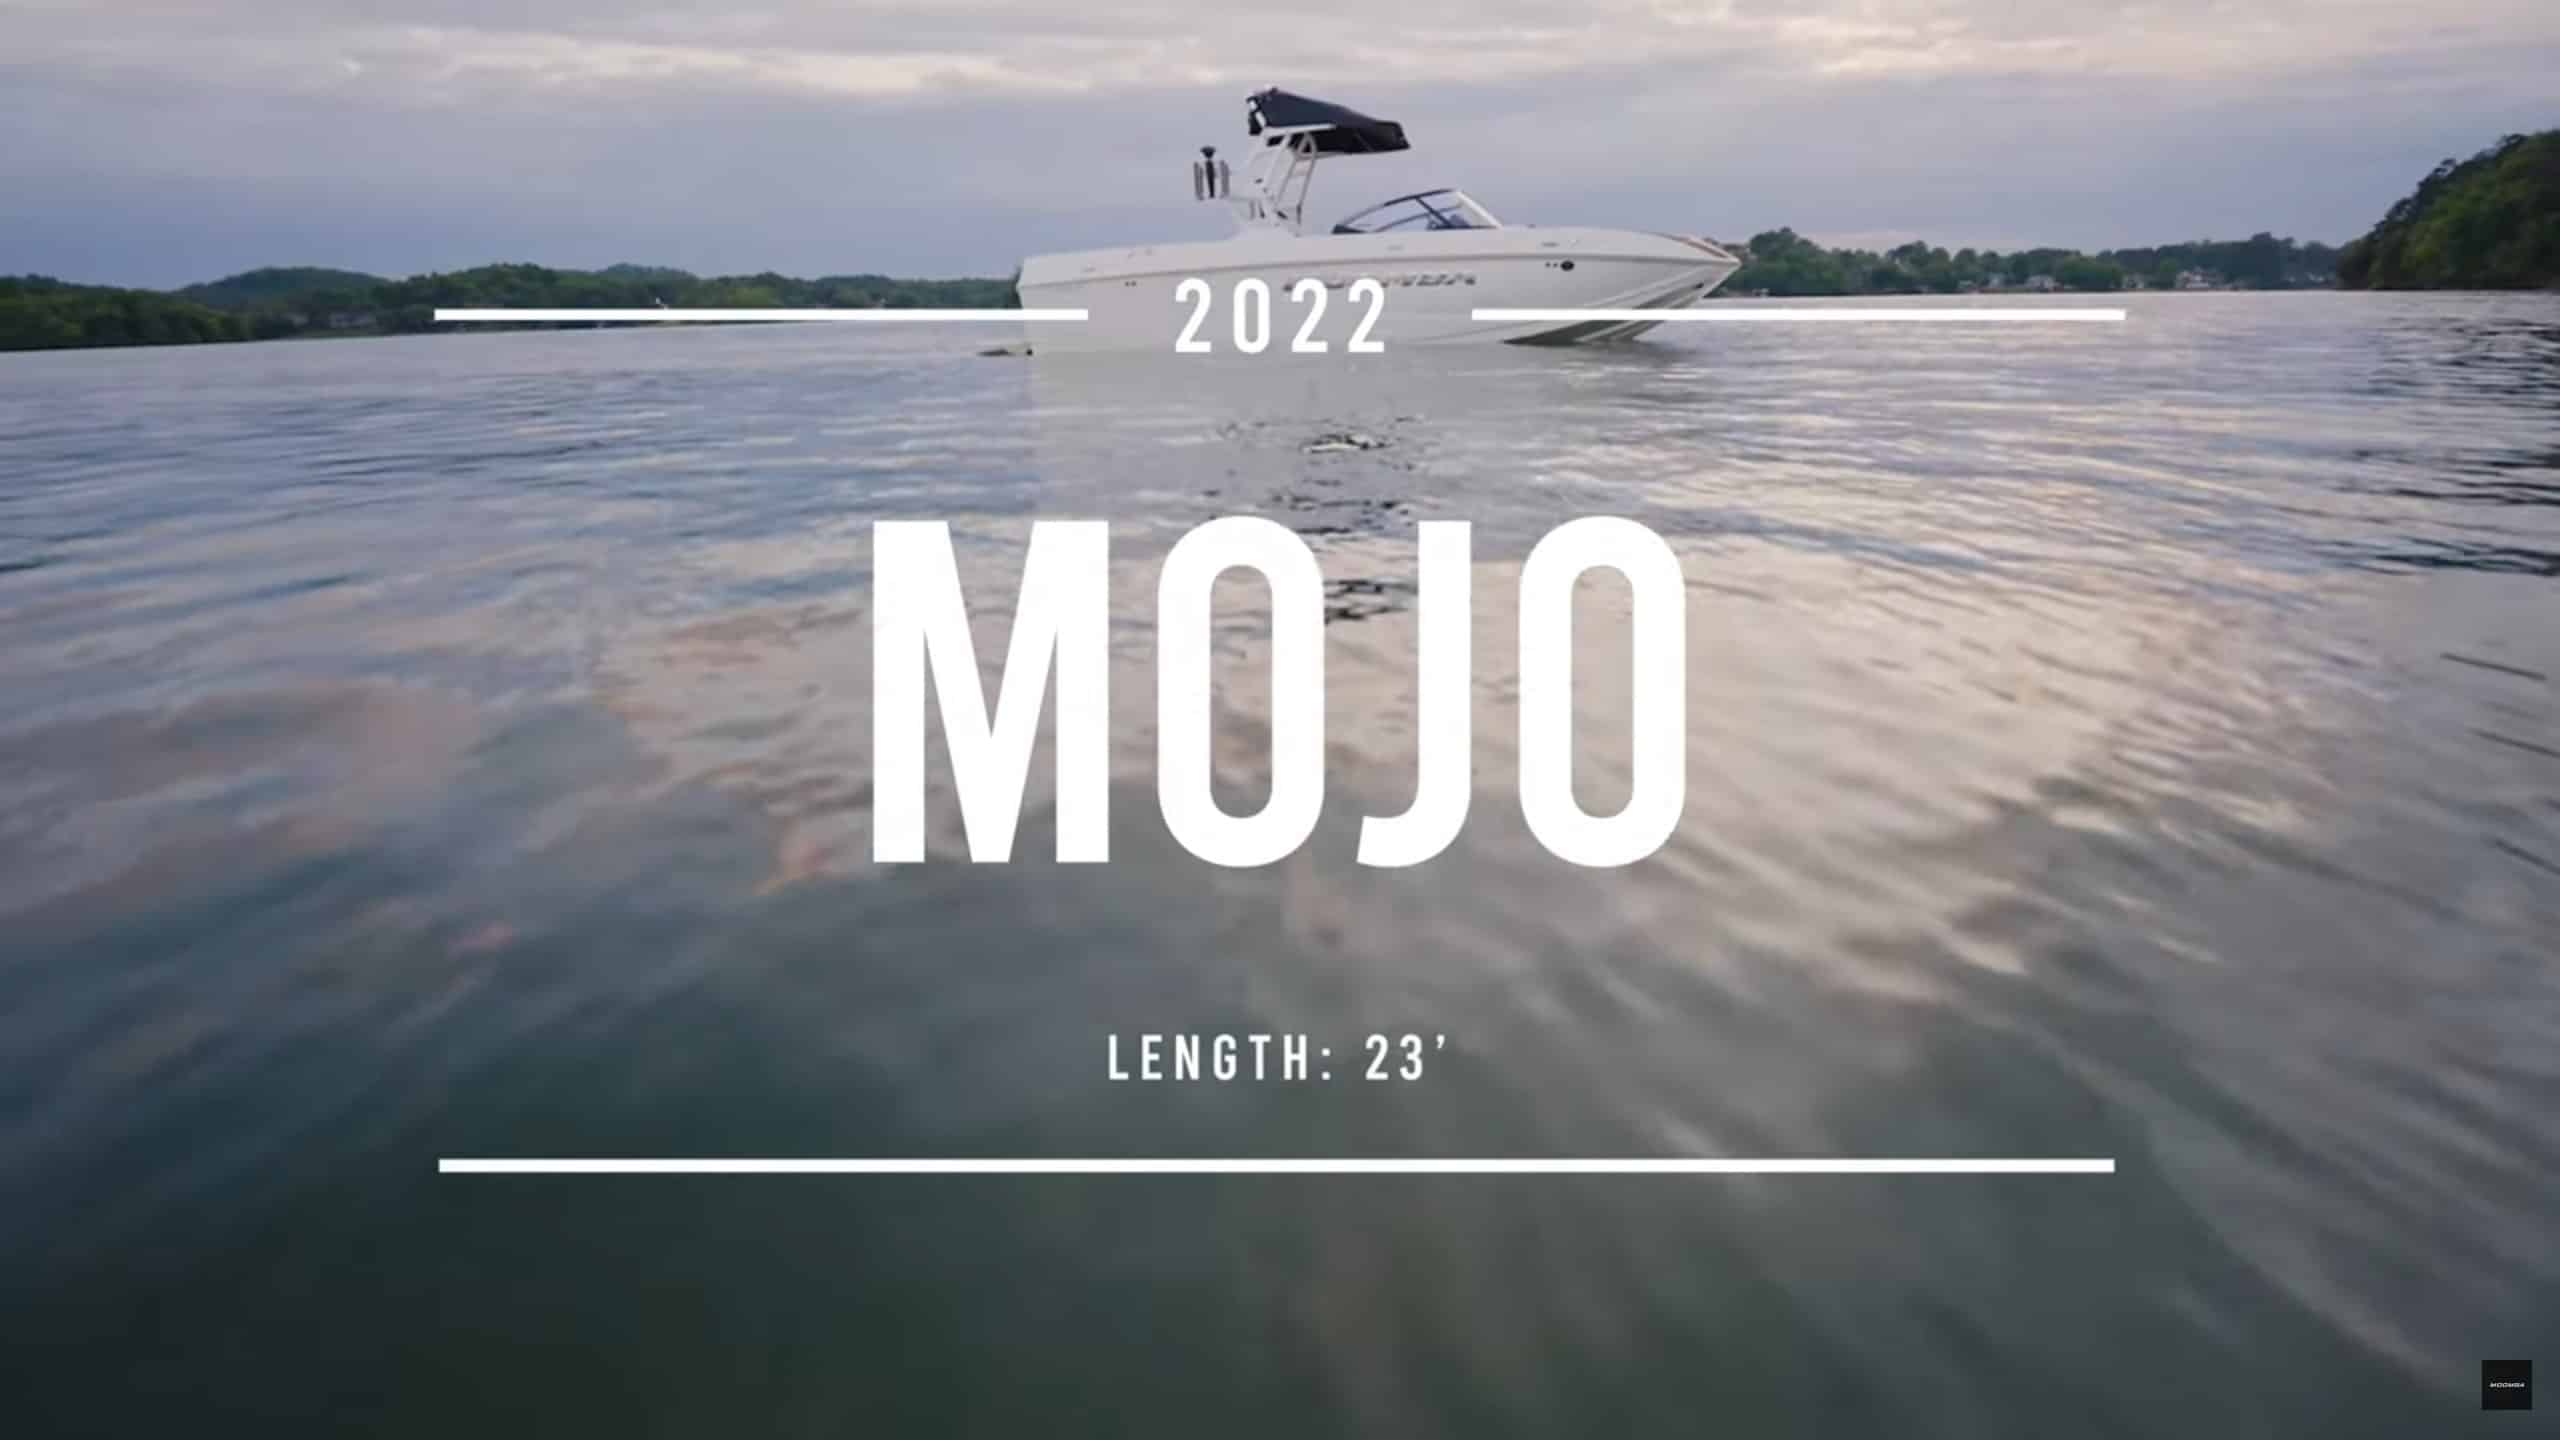 2022 Moomba Mojo